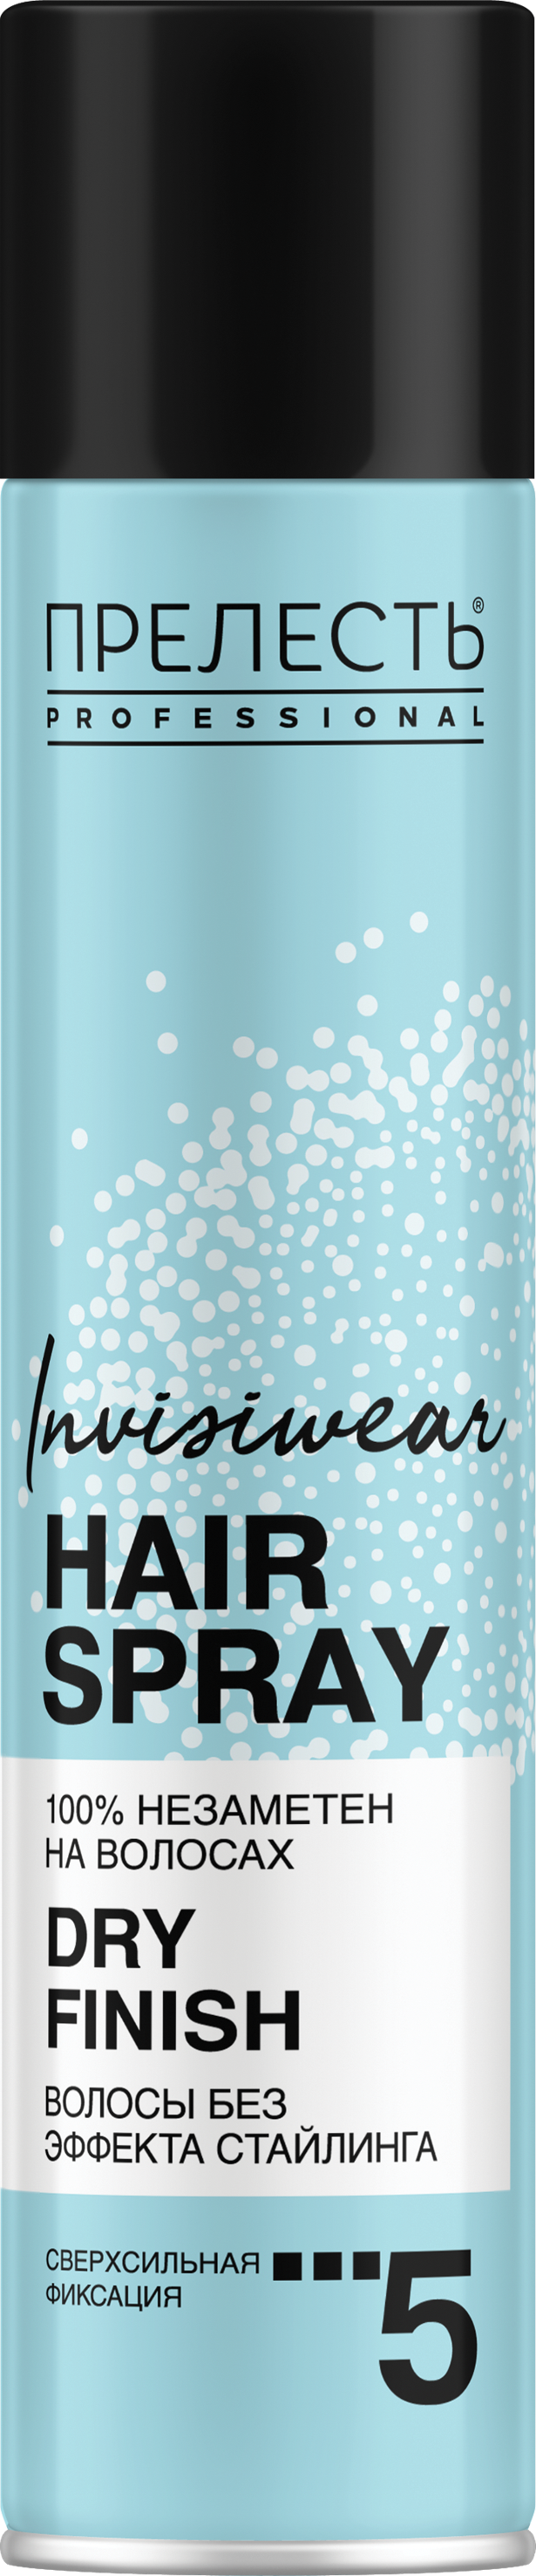 Лак для волос Прелесть Invisiwear Невесомый, сухое распыление, 300 мл лак для укладки волос taft power экспресс укладка мегафиксация 5 225 мл